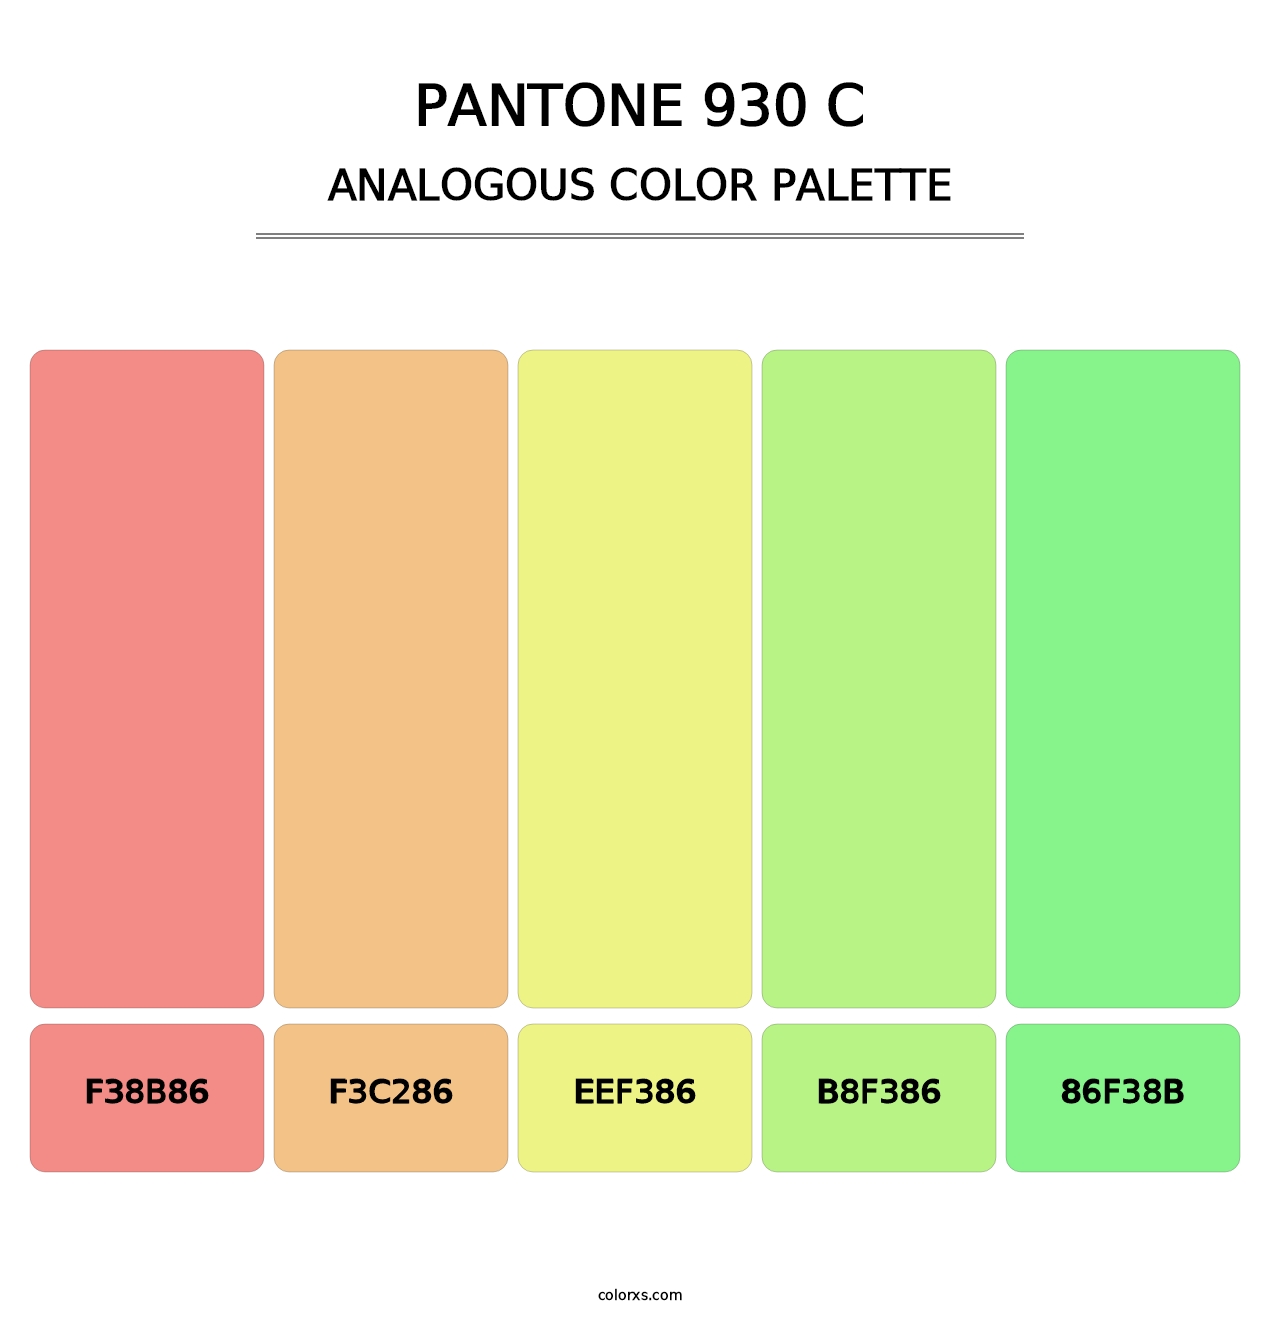 PANTONE 930 C - Analogous Color Palette